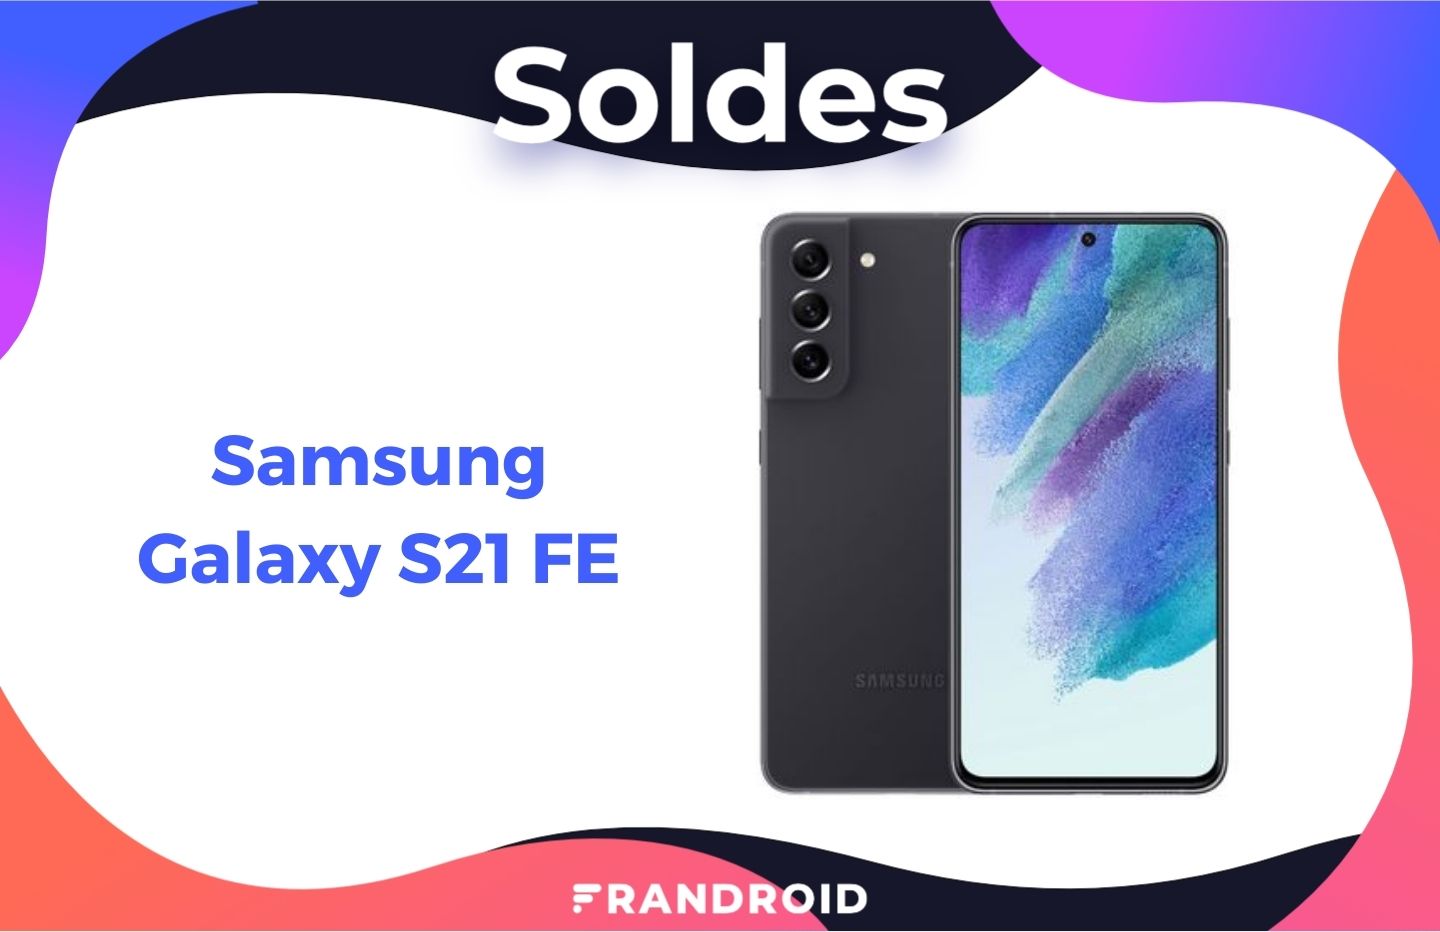 Ajoutez ce code promo fou et saisissez le Samsung Galaxy S20 FE 5G à moins  de